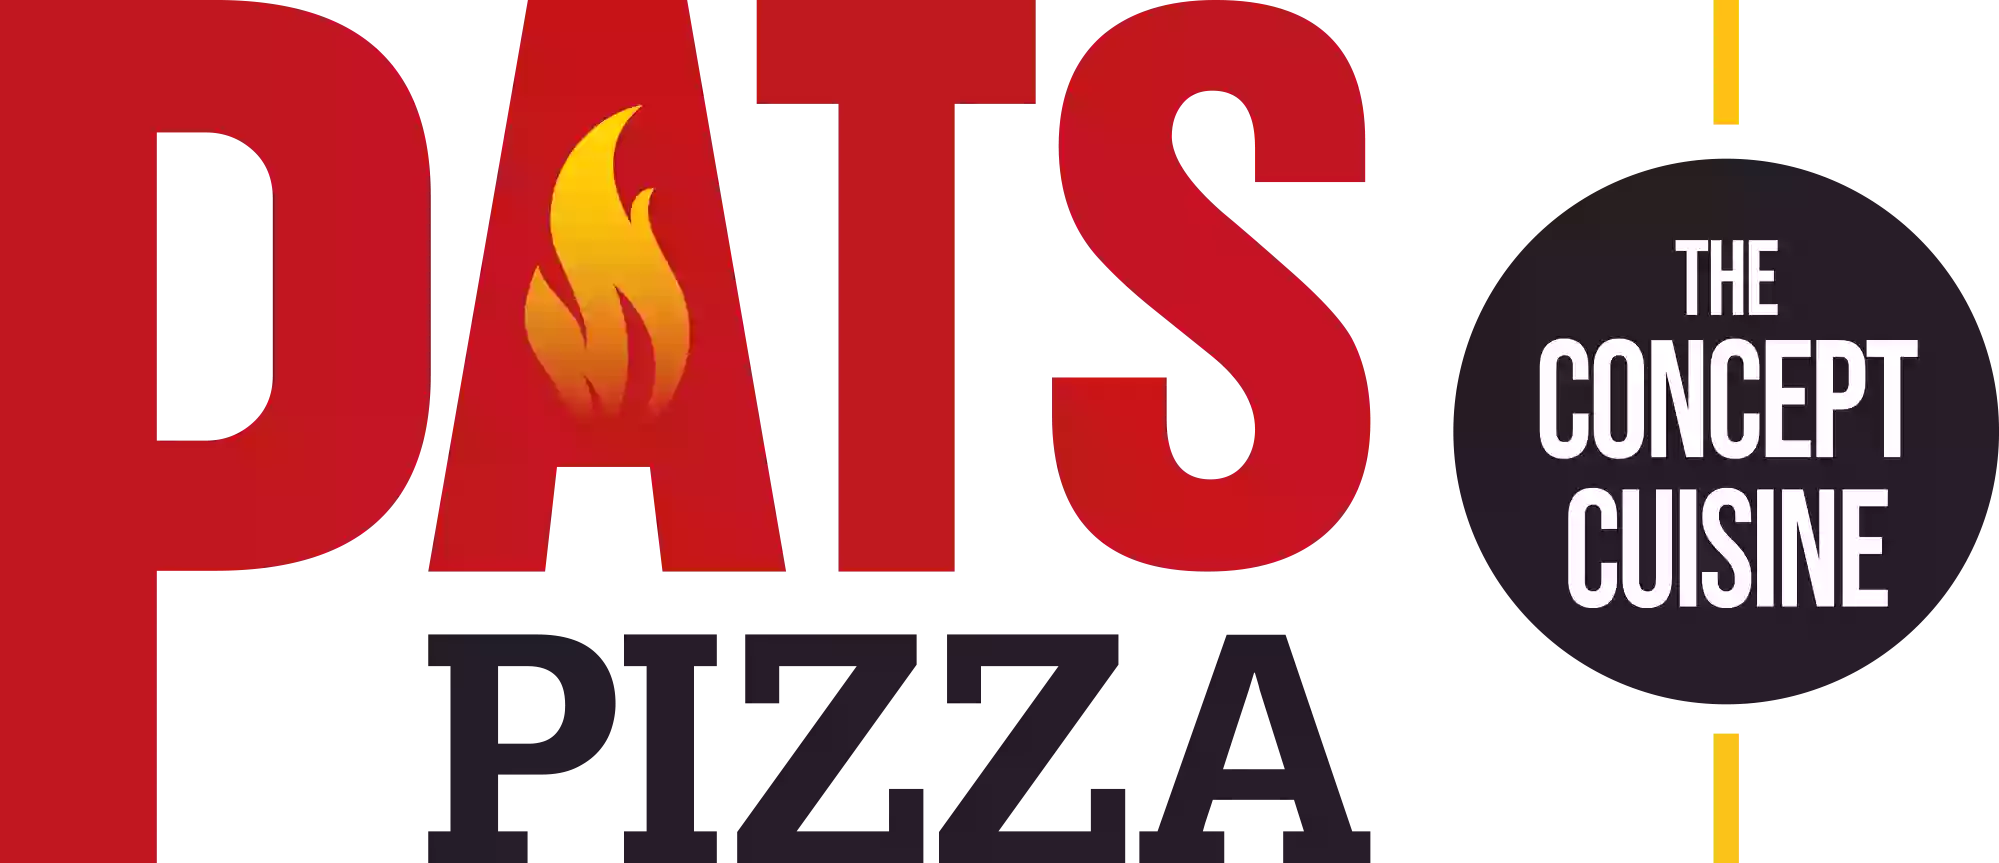 Pat's Pizza Kennett Square